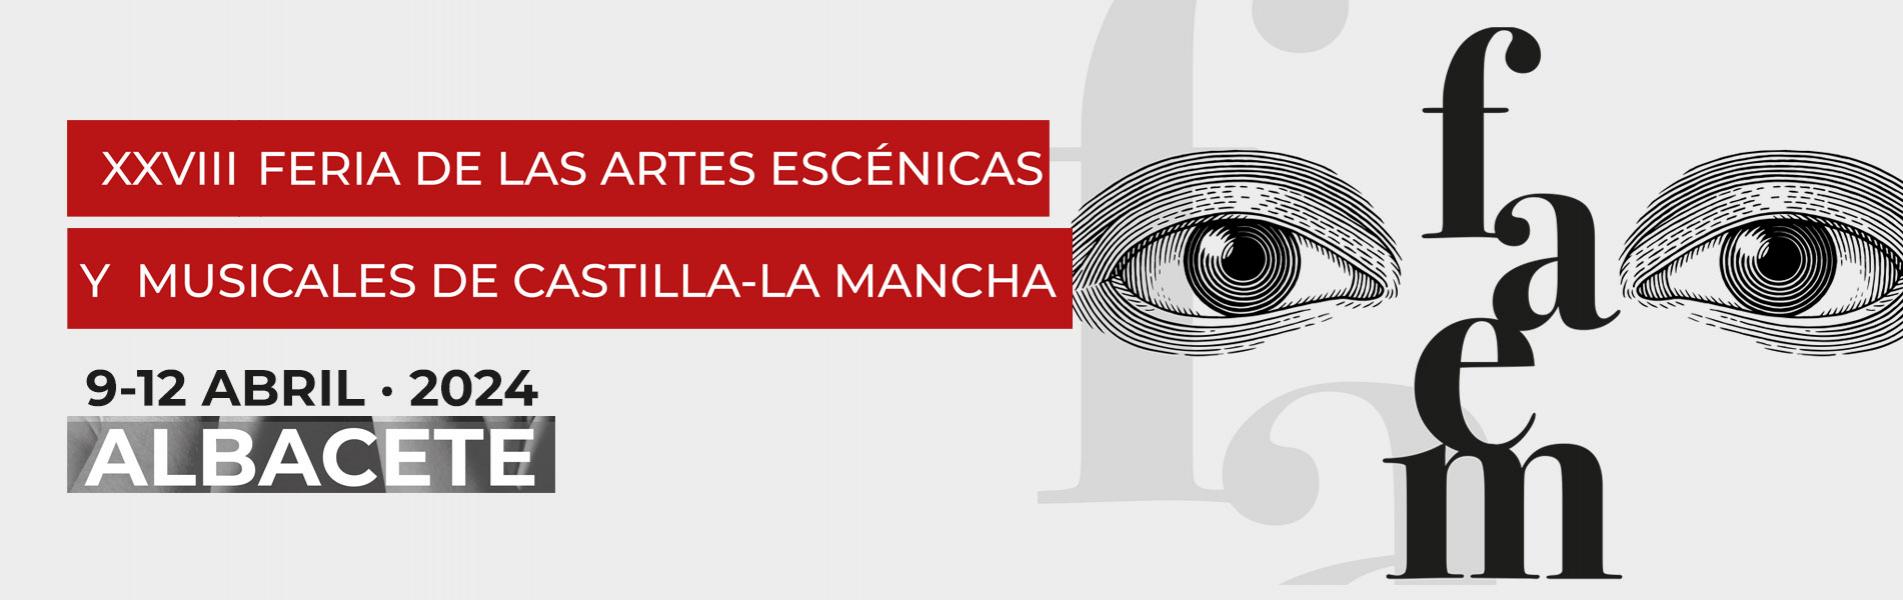 Taller "La Cultura Sostenible en las Artes Escénicas" en la XXVIII Feria de las Artes Escénicas y Musicales de Castilla la-Mancha (Albacete)